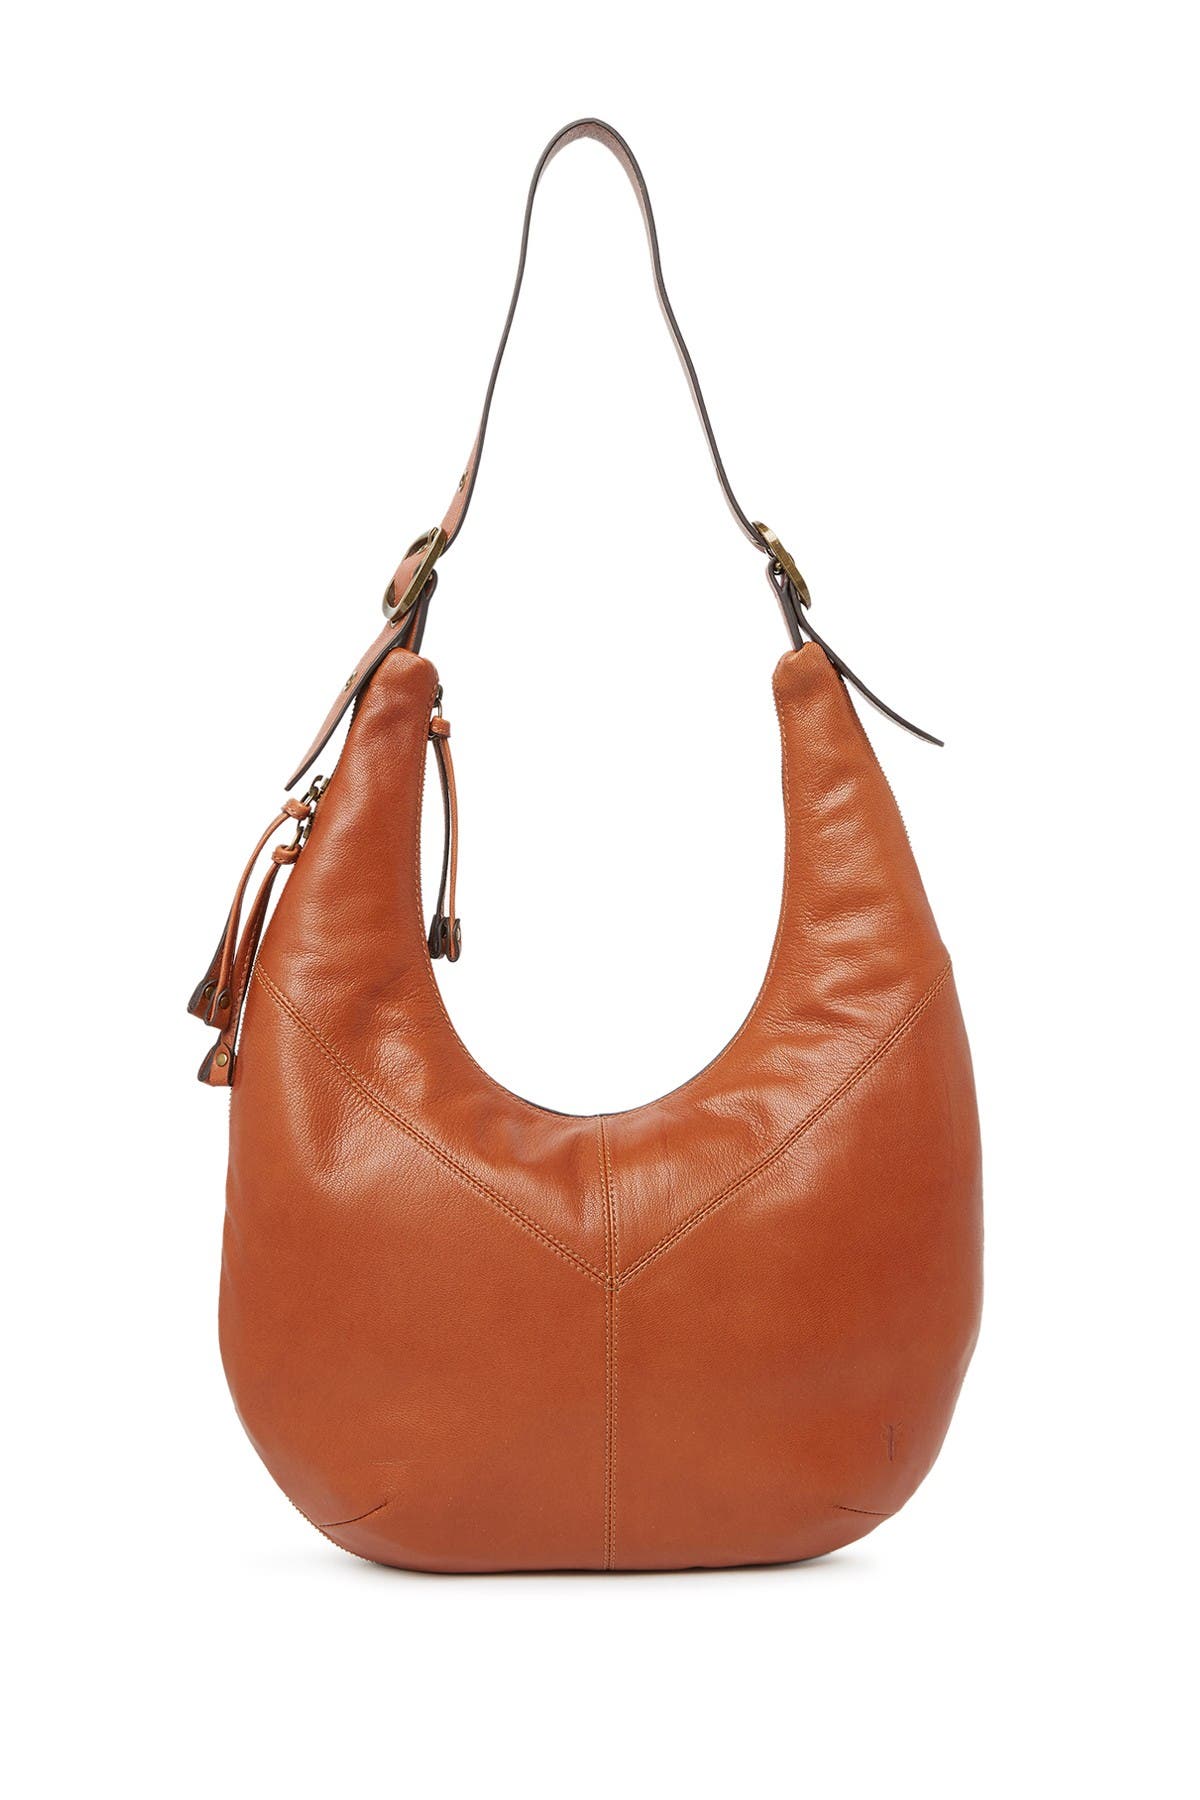 Frye Gina Leather Hobo Bag In Medium Beige9